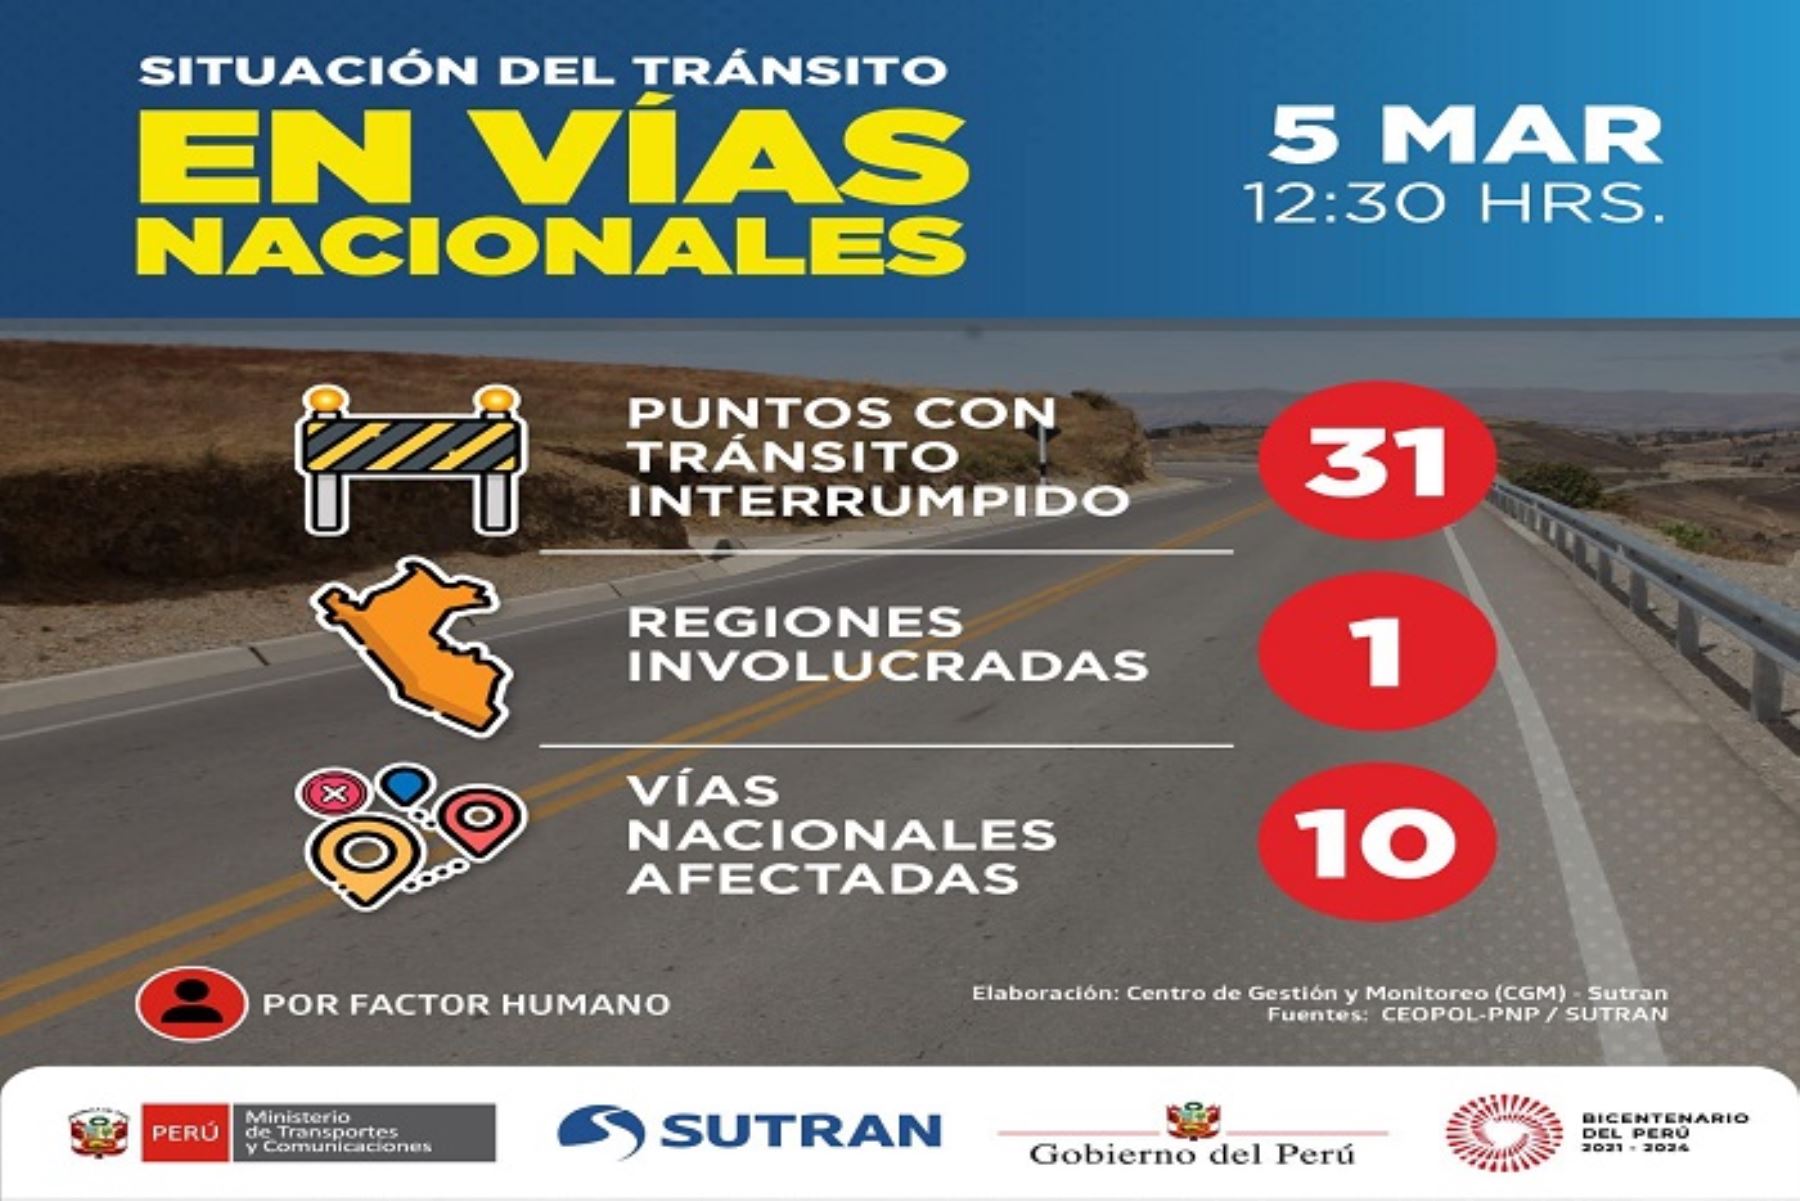 Los 31 puntos con tránsito interrumpido en Puno afectan a 10 vías nacionales.